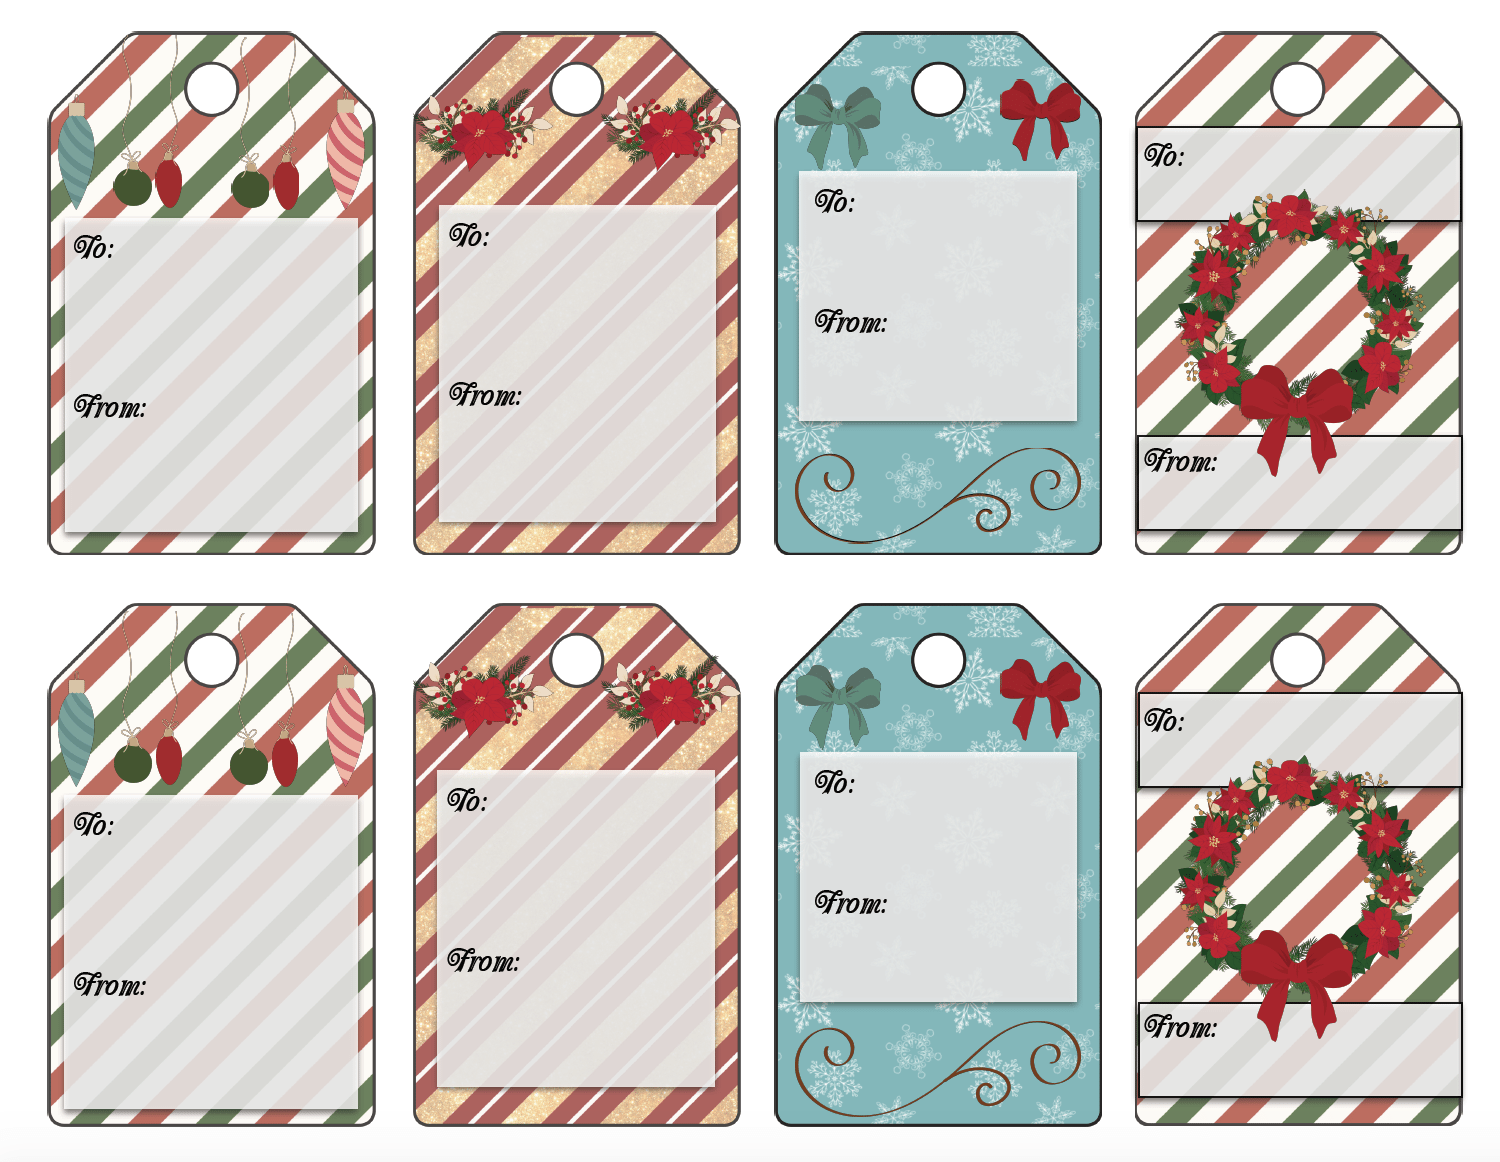 Free Printable Christmas Gift Tags 13 Designs. Just print and use!